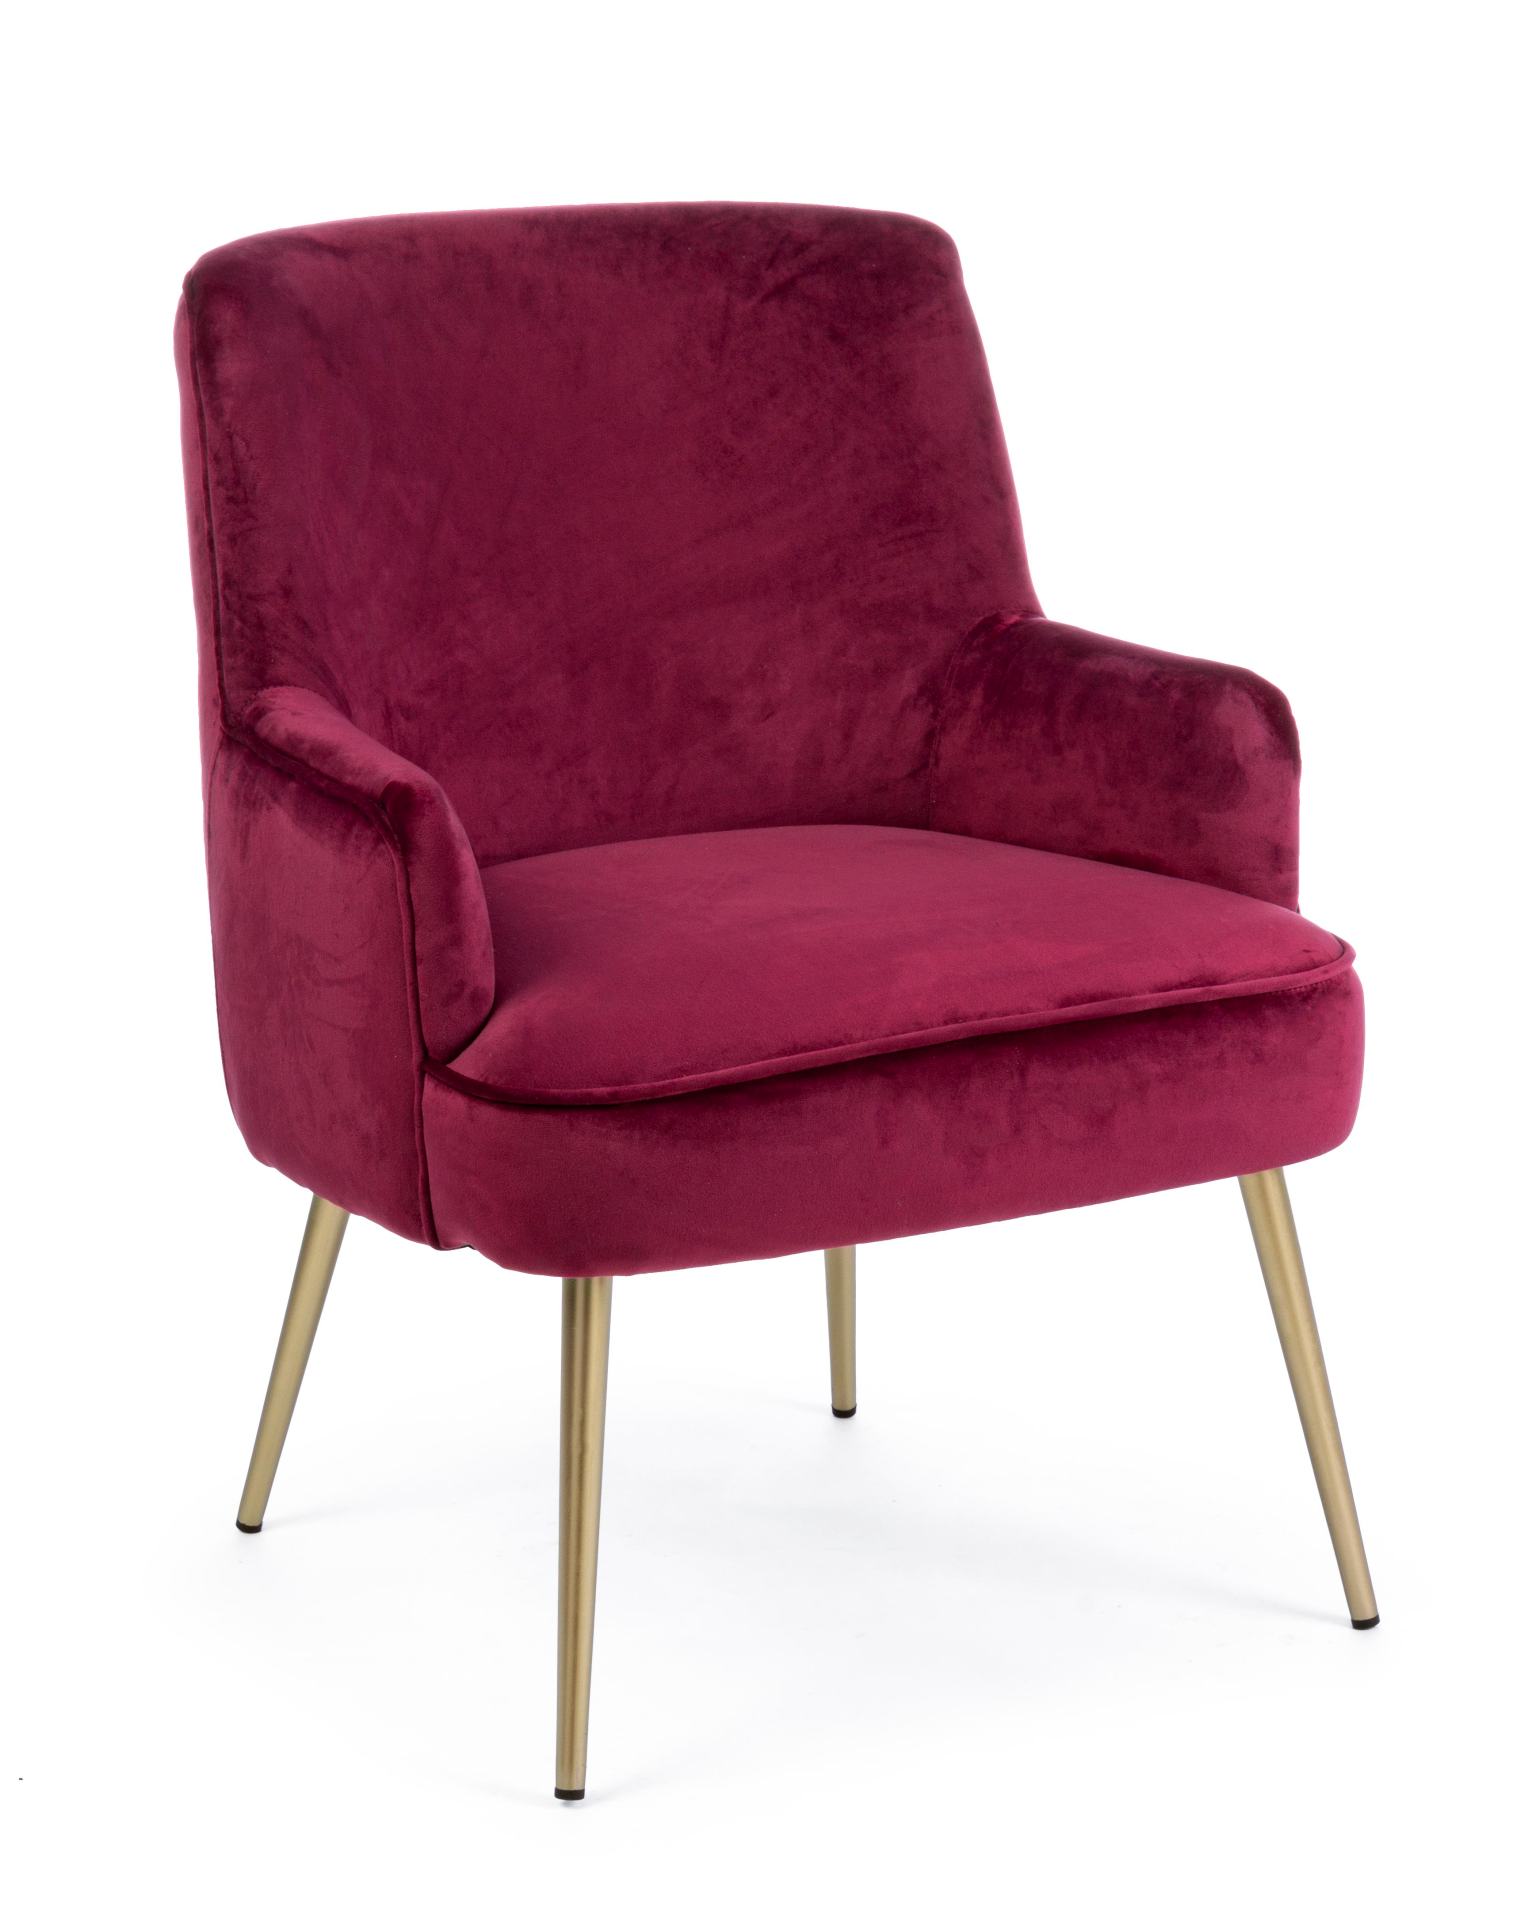 Der Sessel Clelia überzeugt mit seinem modernen Design. Gefertigt wurde er aus Stoff in Samt-Optik, welcher einen roten Farbton besitzt. Das Gestell ist aus Metall und hat eine goldene Farbe. Der Sessel besitzt eine Sitzhöhe von 43 cm. Die Breite beträgt 